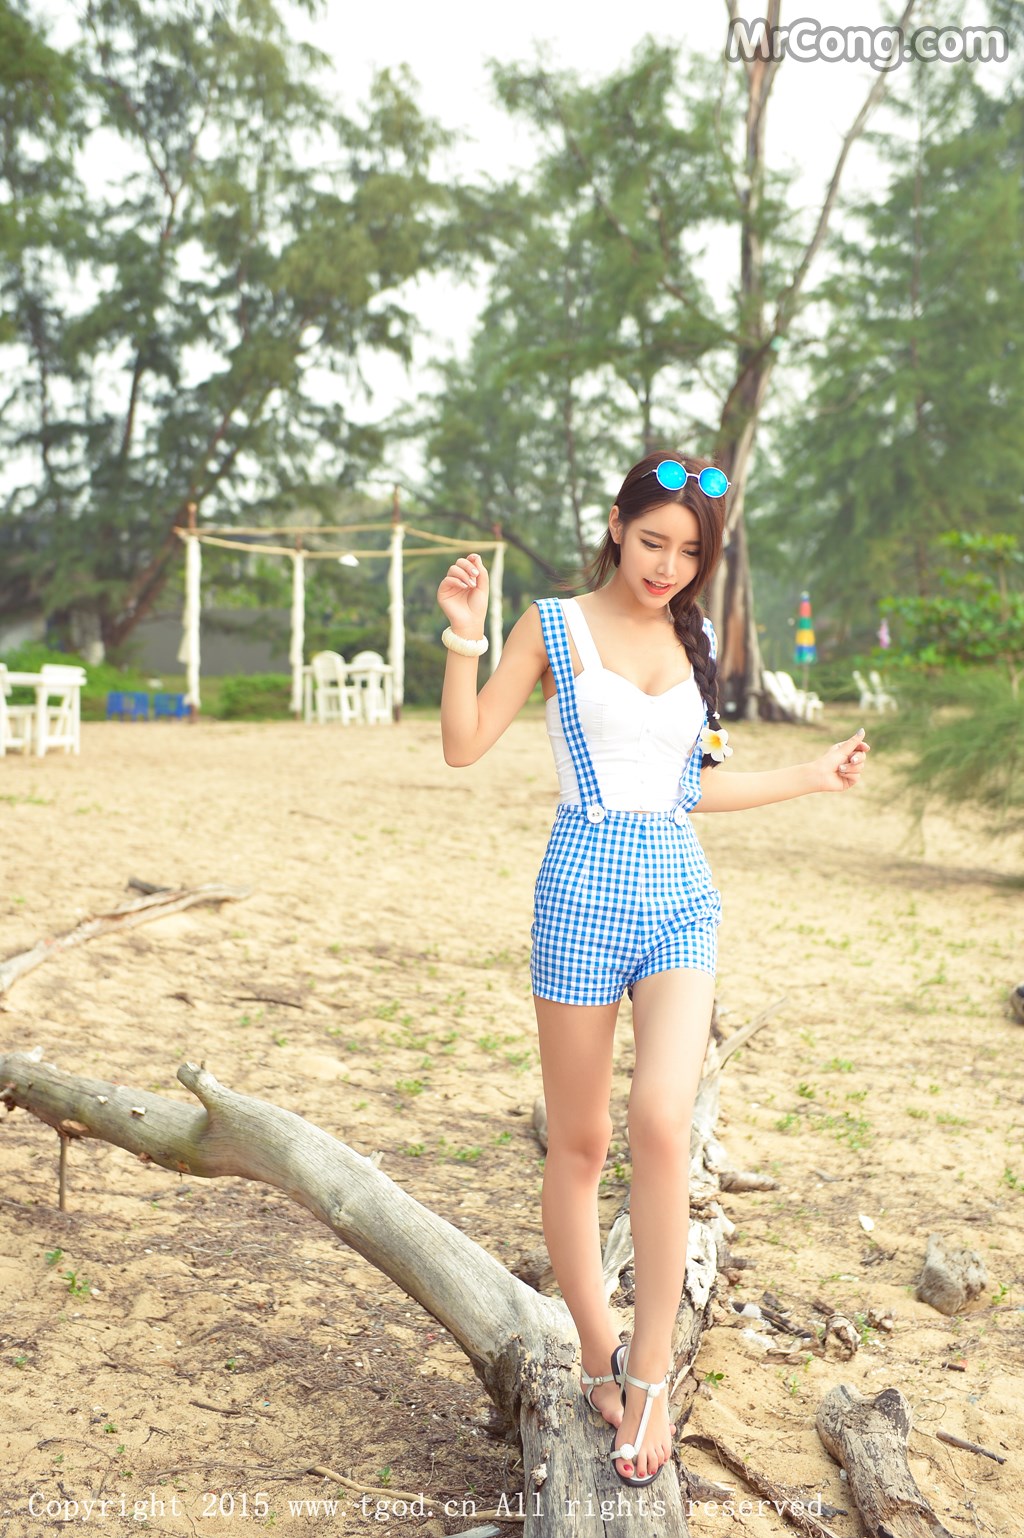 TGOD 2015-11-24: Model Xu Yan Xin (徐妍馨 Mandy) (46 photos)